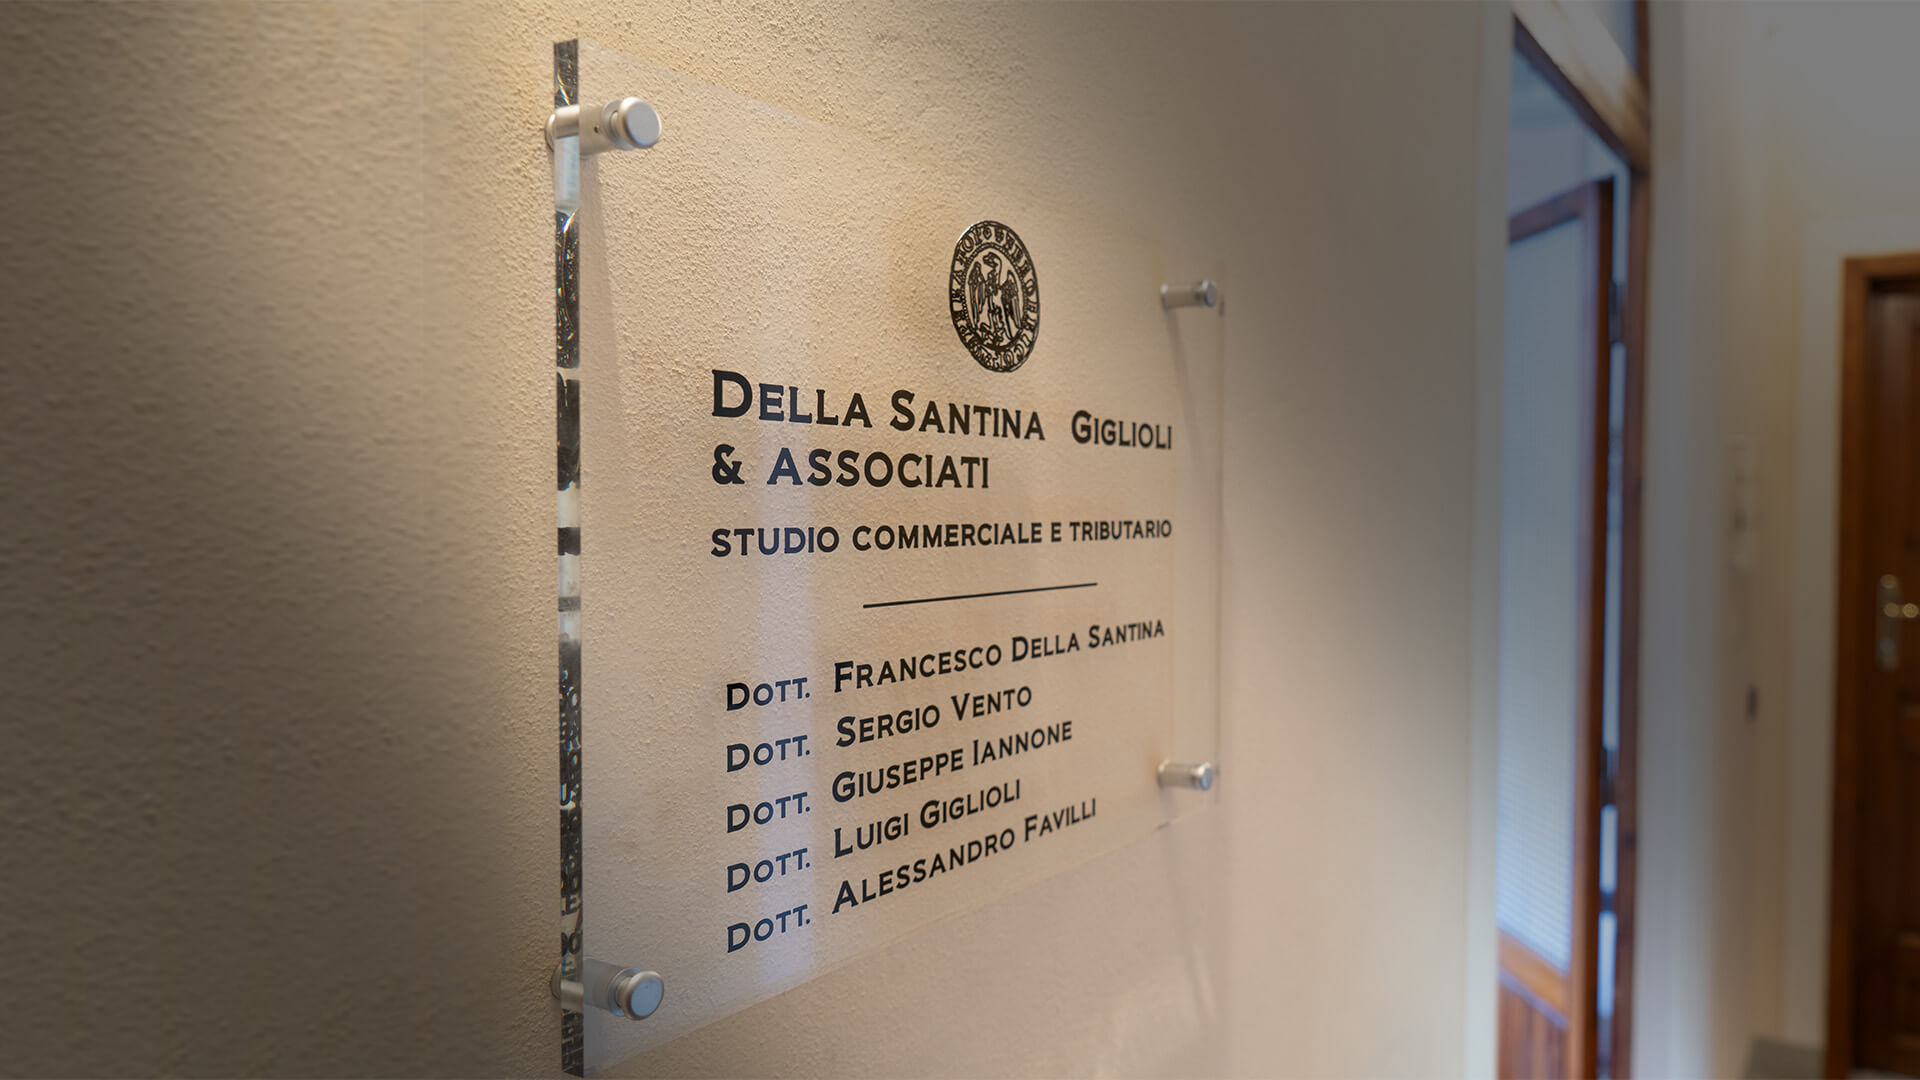 Studio Della Santina Giglioli & Associati